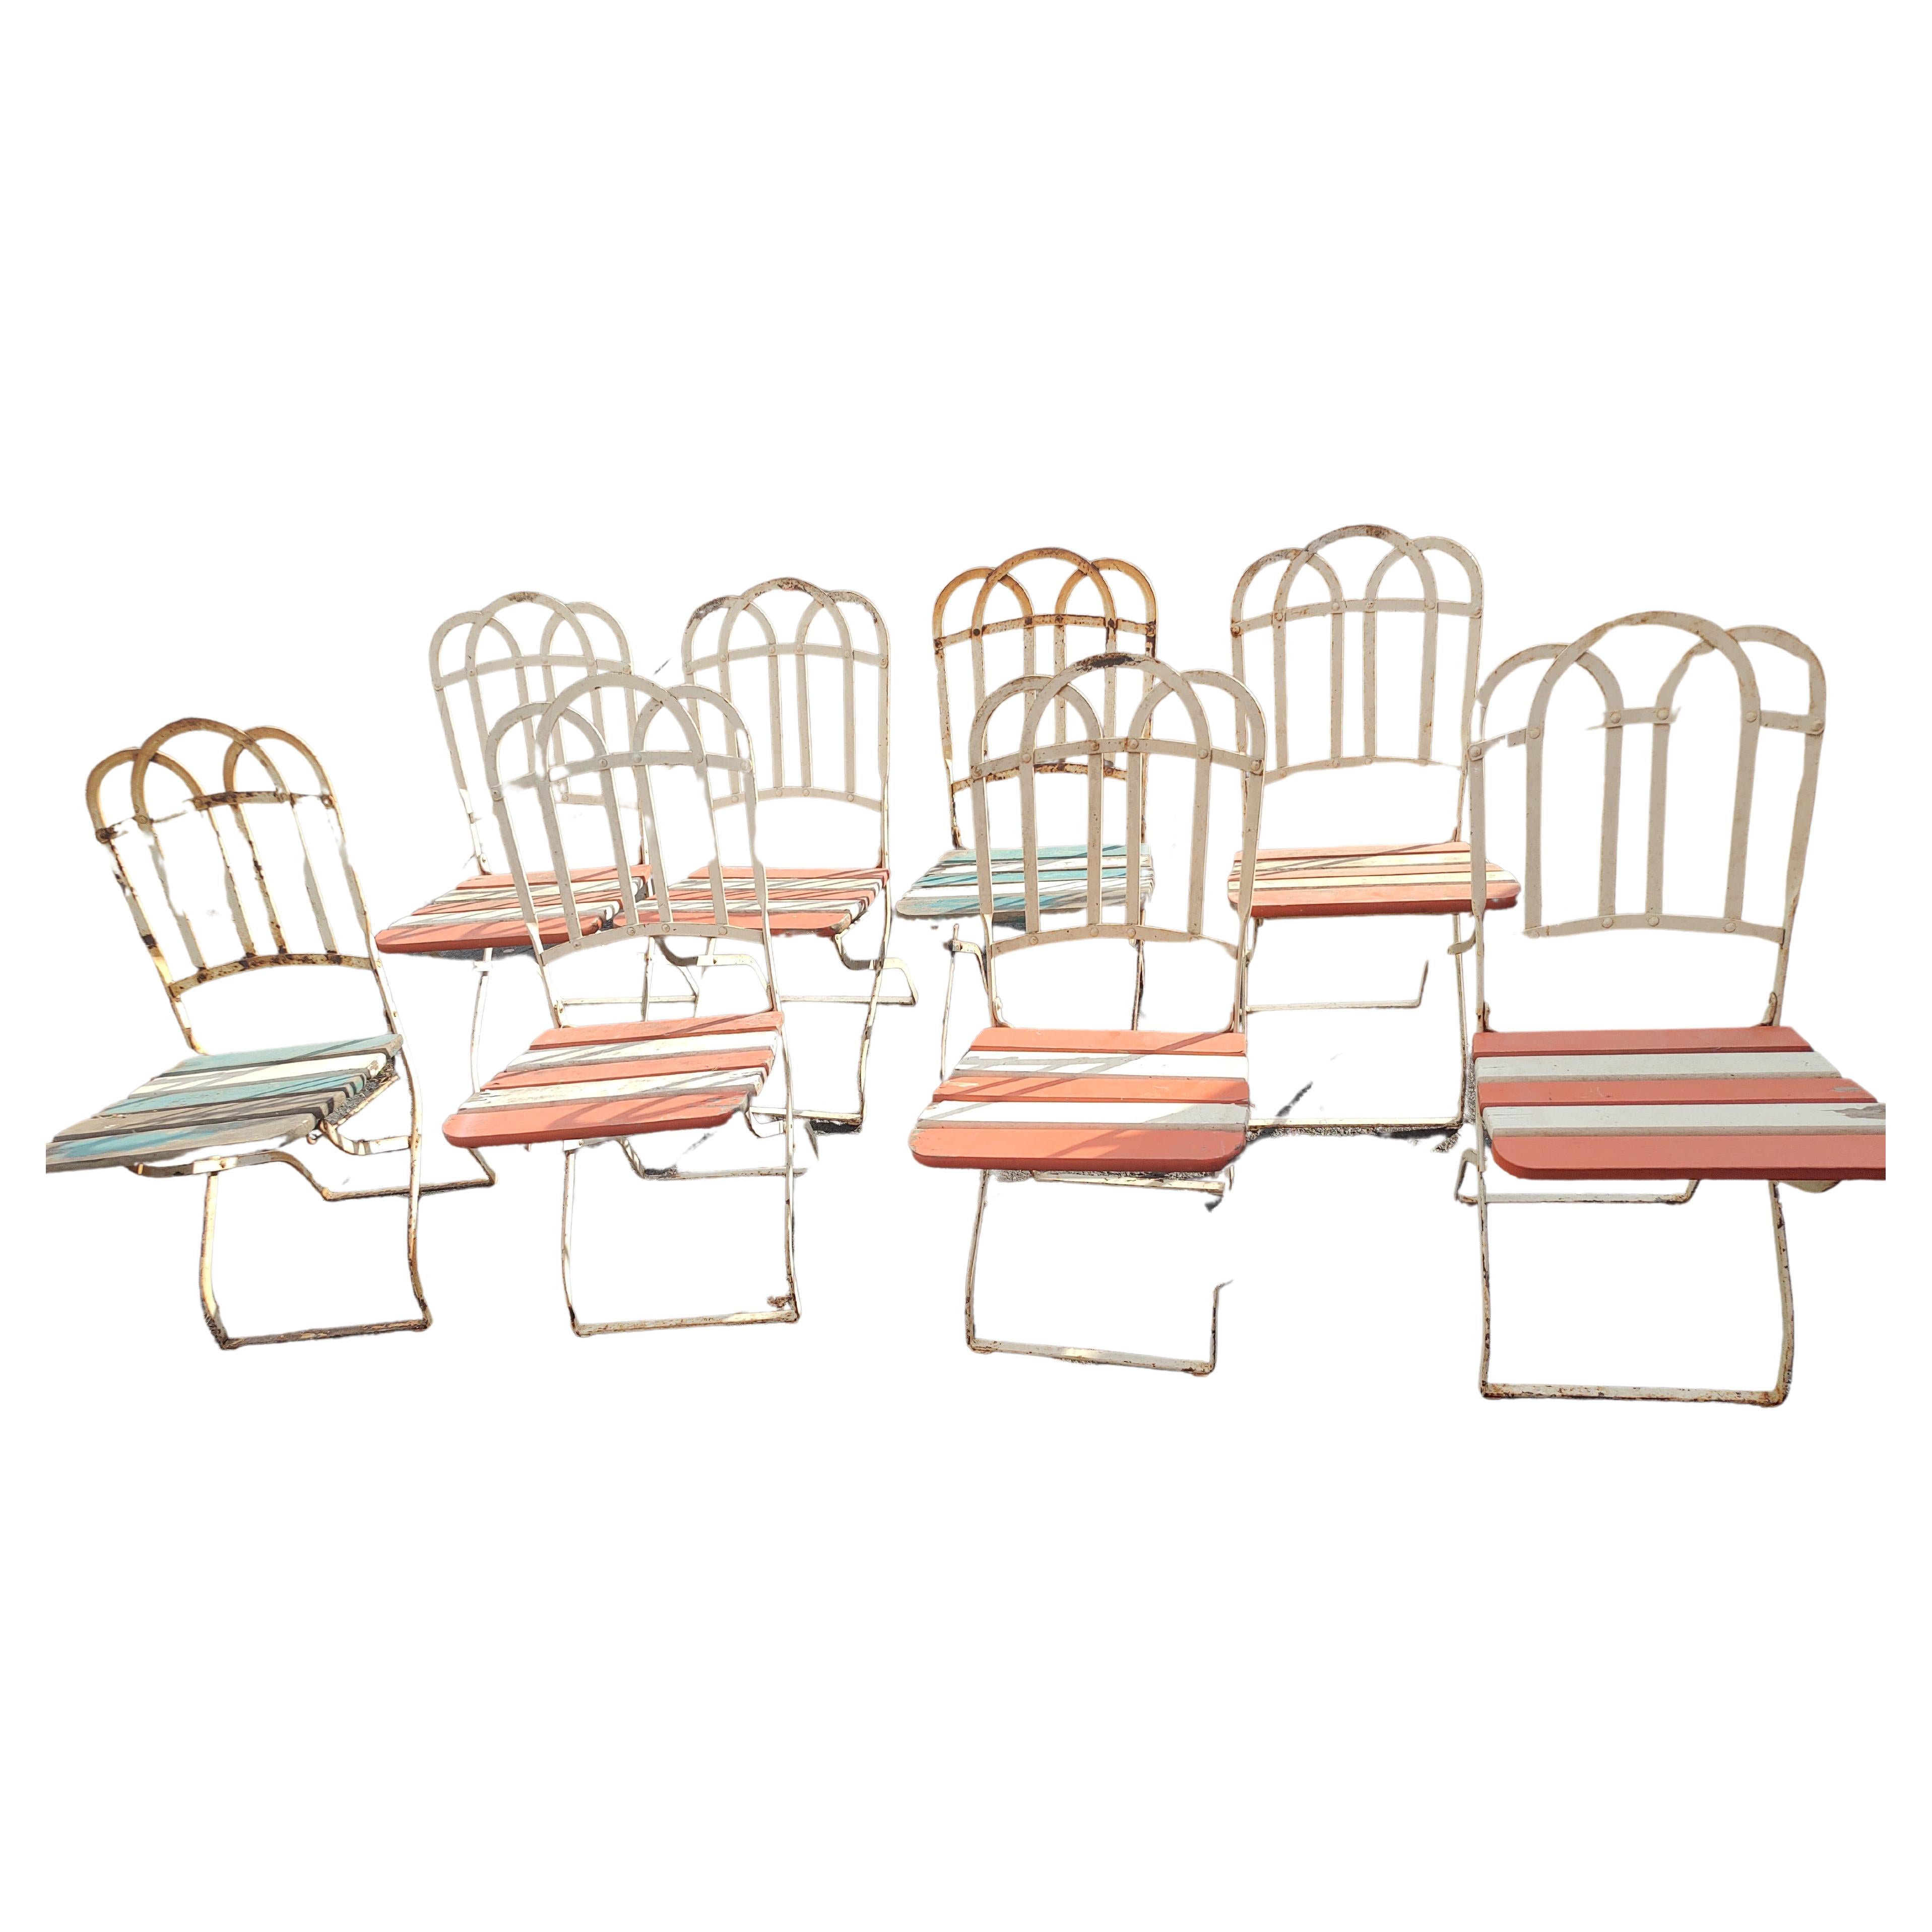 Fabelhaftes Set aus 8 zusammenklappbaren Gartenstühlen mit einem Hauch von Pariser Charme und Eleganz, wie man sie von französischen Cafés kennt. Die Stühle sind in einem ausgezeichneten antiken, unrestaurierten Zustand. Das Holz ist völlig intakt